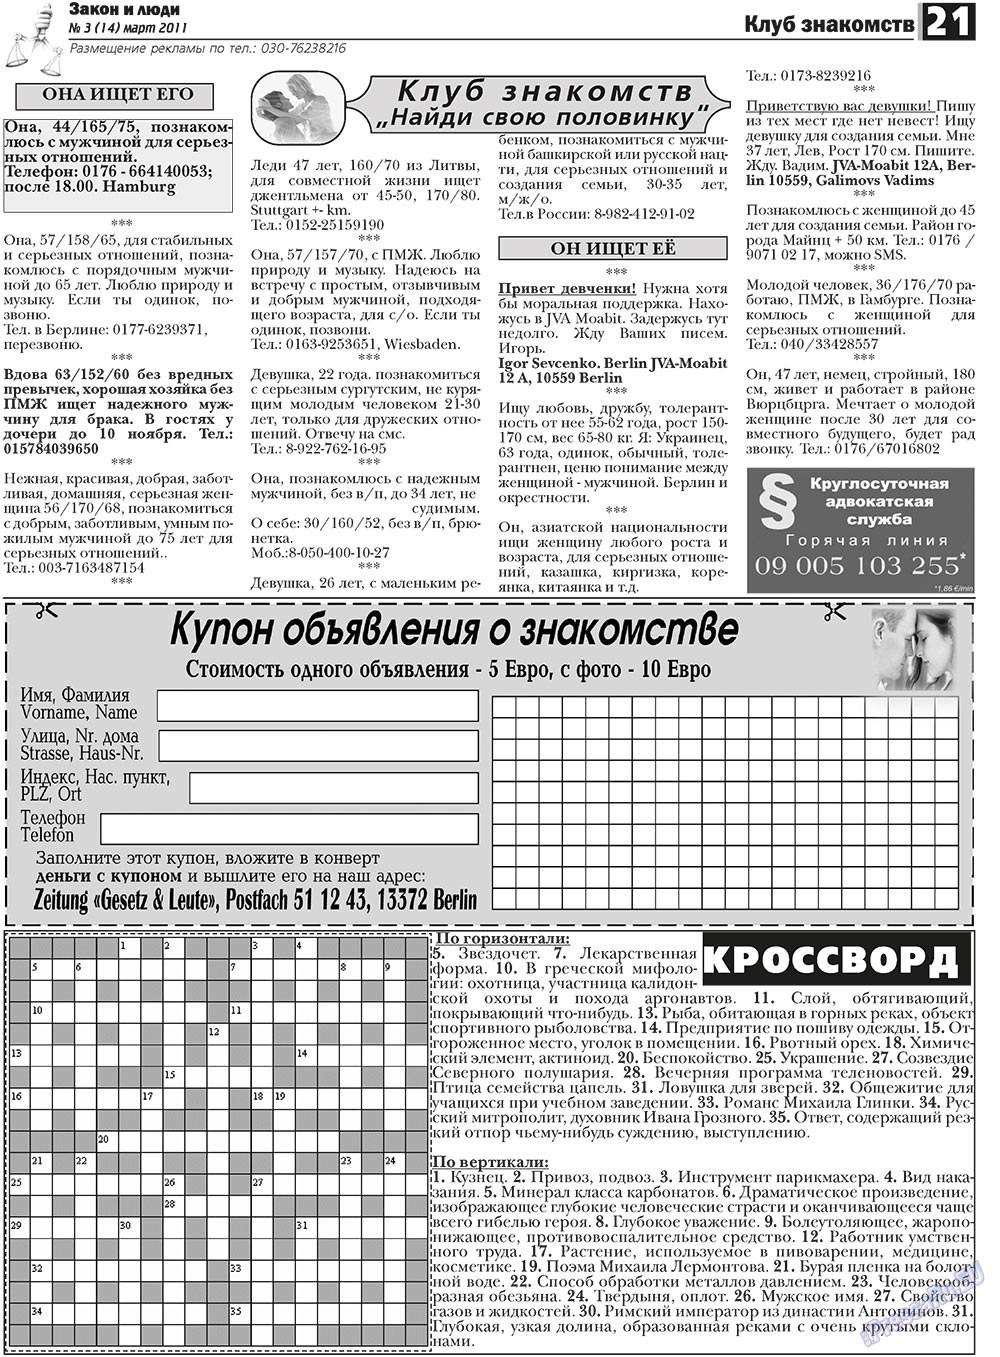 Закон и люди, газета. 2011 №3 стр.21